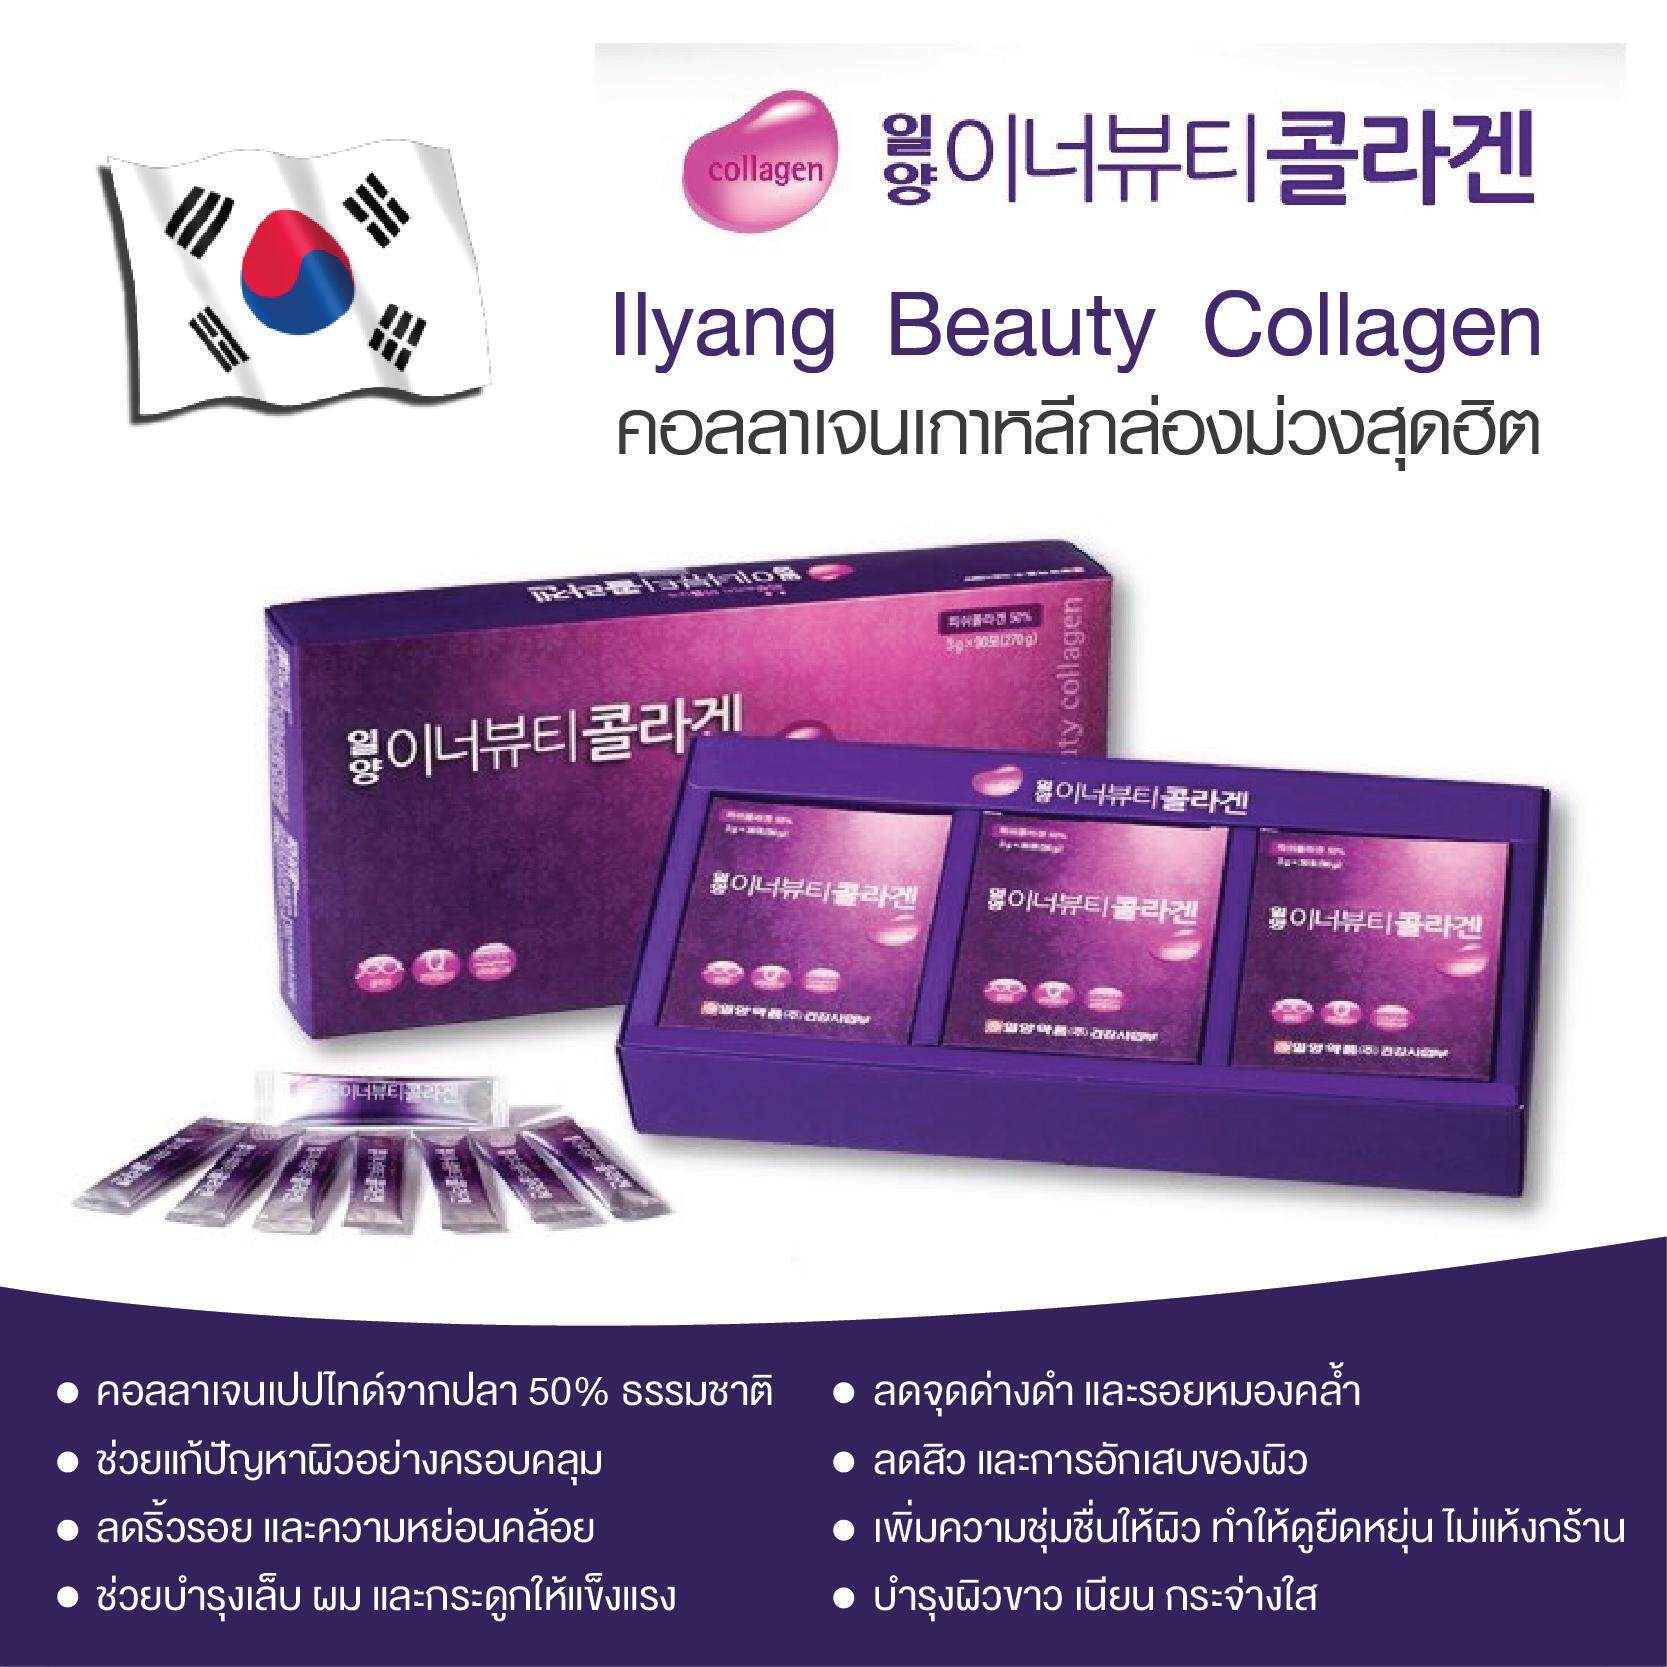 ใหม่ล่าสุด❤️พร้อมส่ง❤️แท้ 100%!! IIyang beauty collagen (llyang)อาหารเสริม ของแท้100%คอลลาเจนกล่องม่วงจากเกาหลี ฮิตสุดในเกาหลี 1 กล่อง 30 ซอง